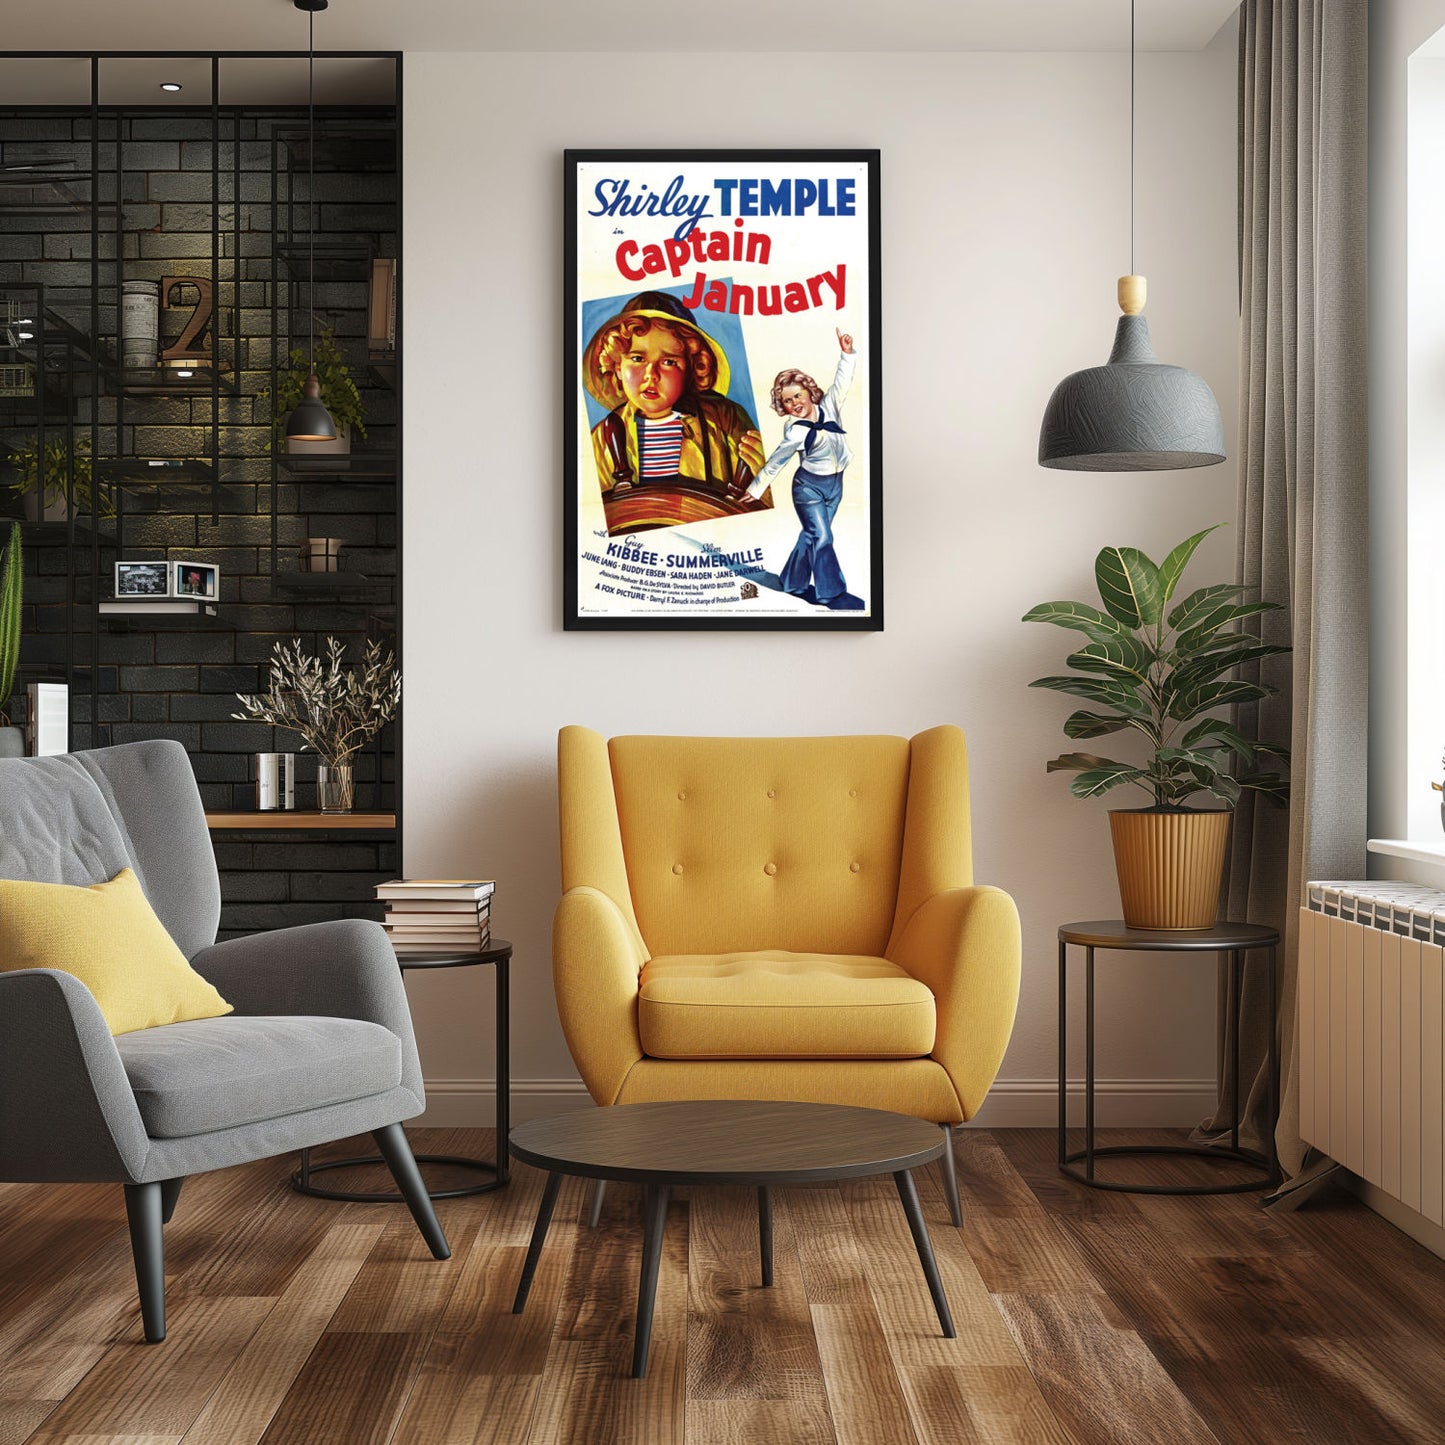 "Captain January" (1936) Framed Movie Poster